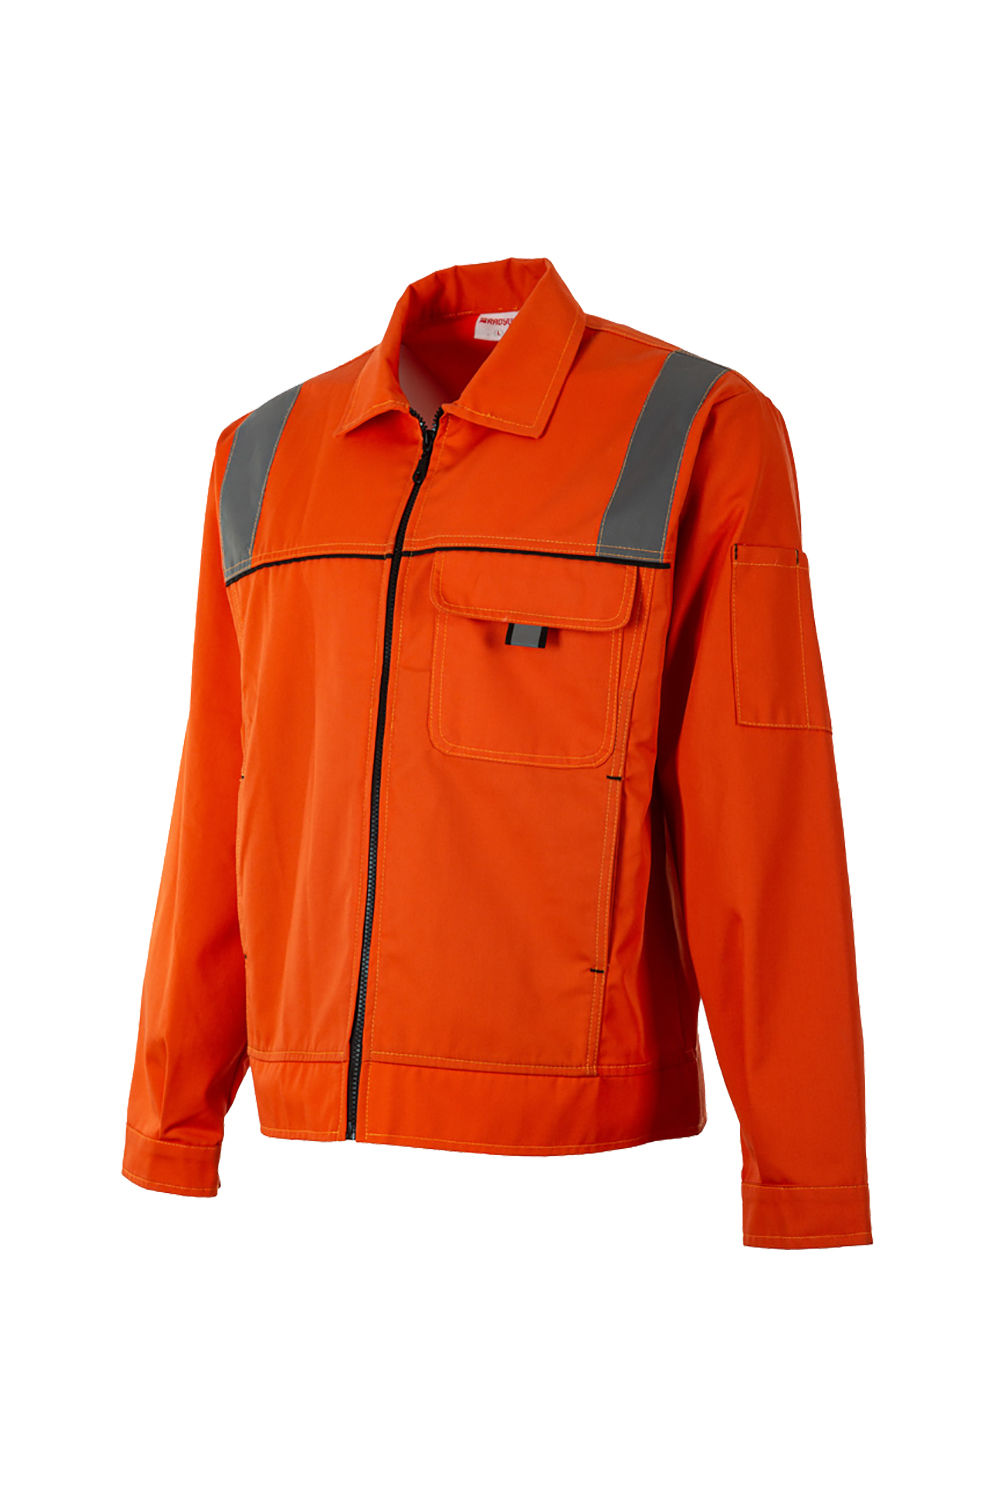 İş Ceketi / İş Ceketi / İş Kıyafetleri